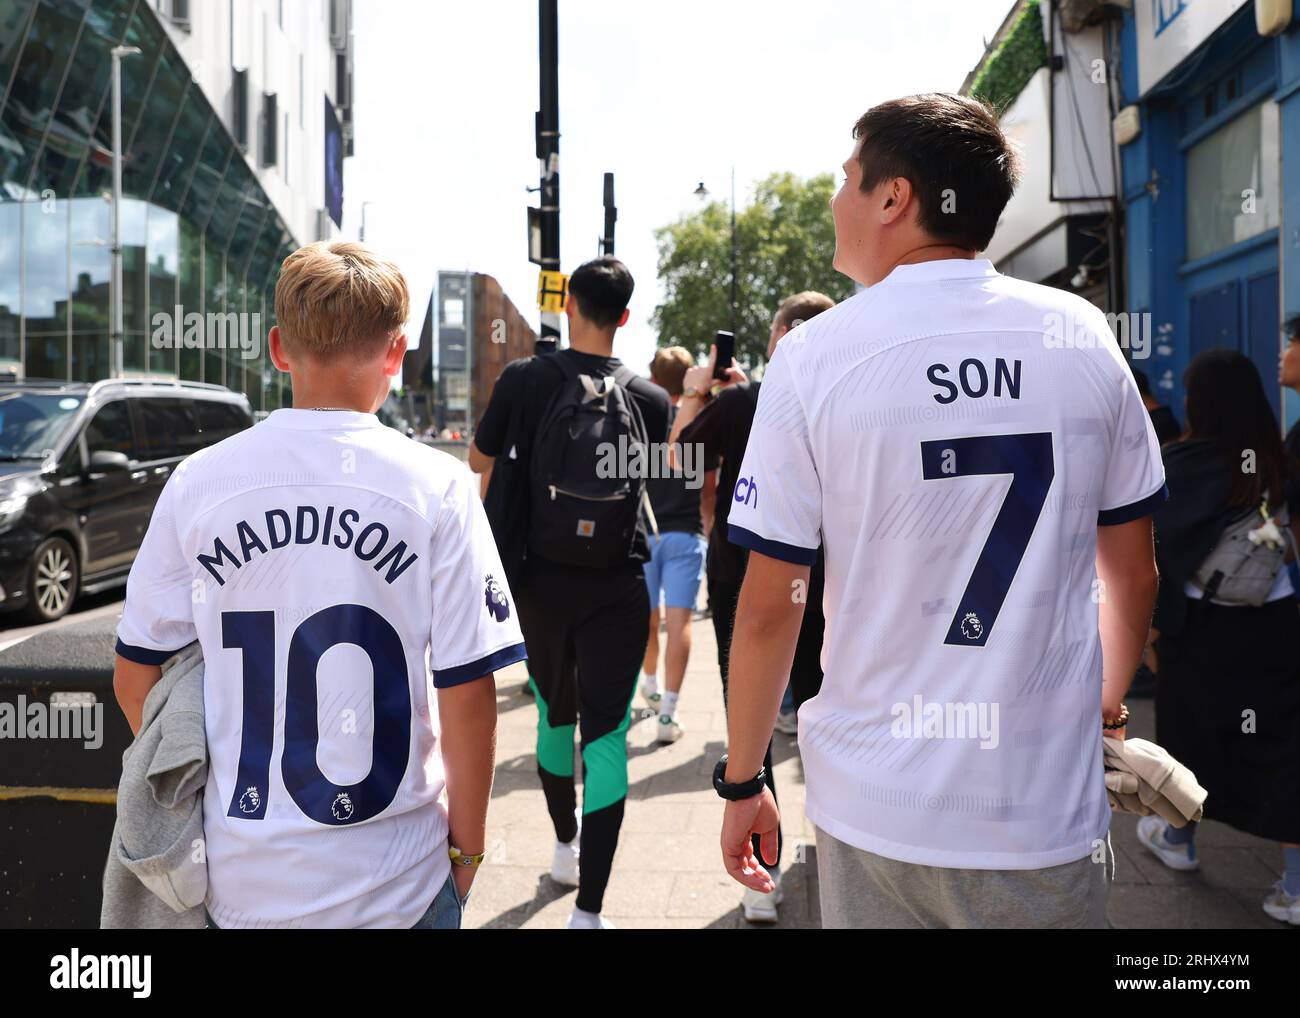 Tottenham Hotspur 2018-19 kit has a White Hart Lane tribute